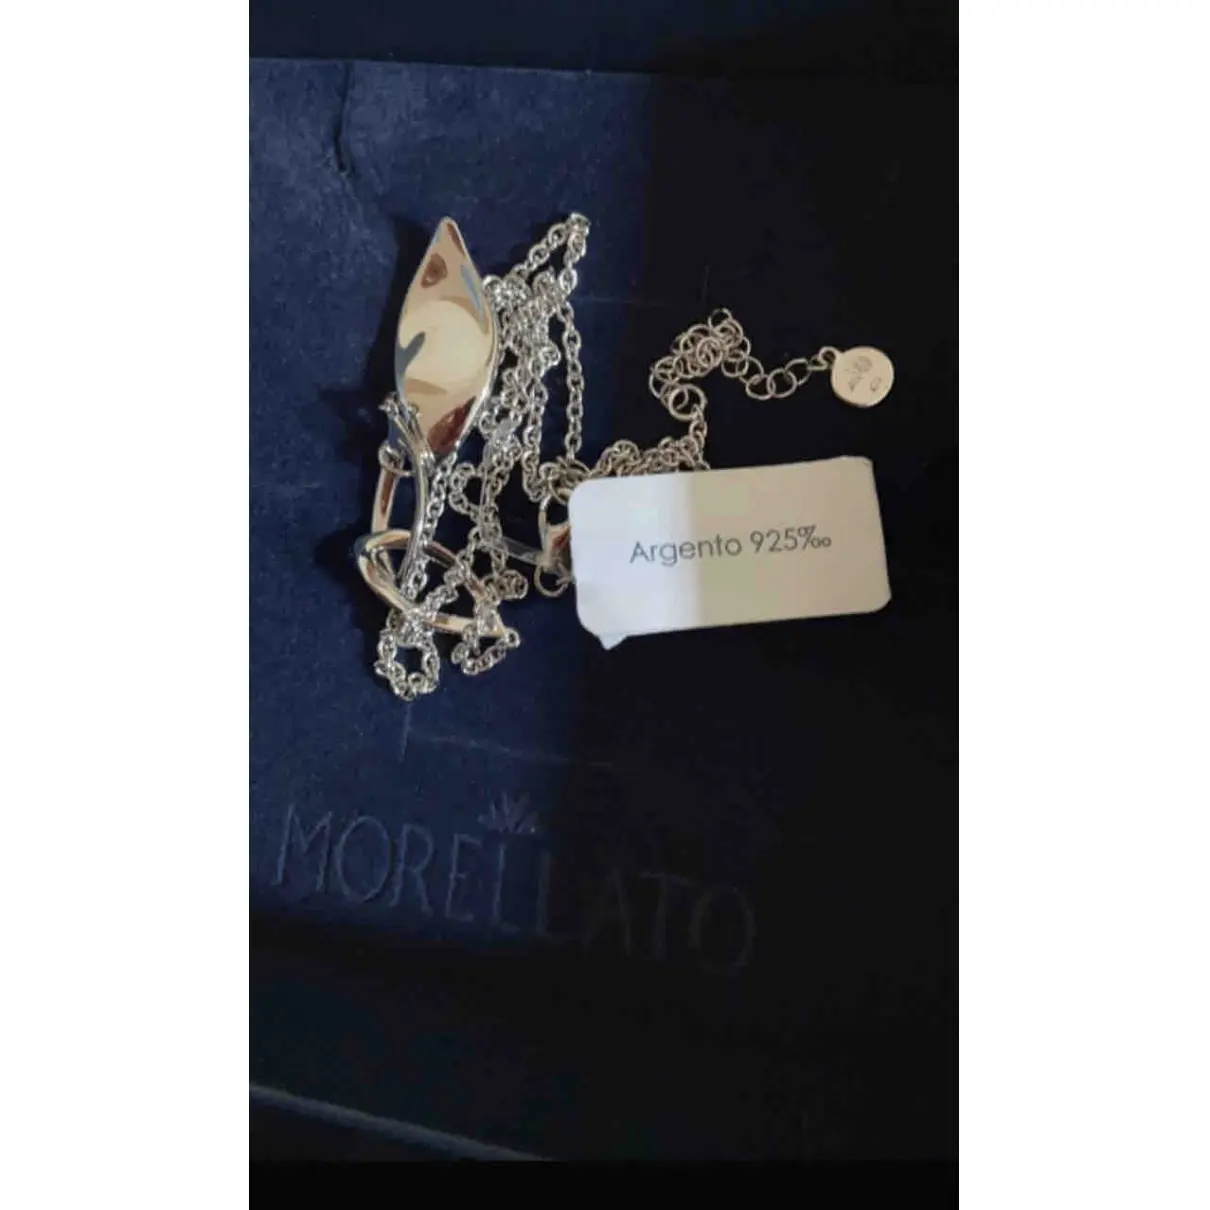 Buy MORELLATO Silver necklace online